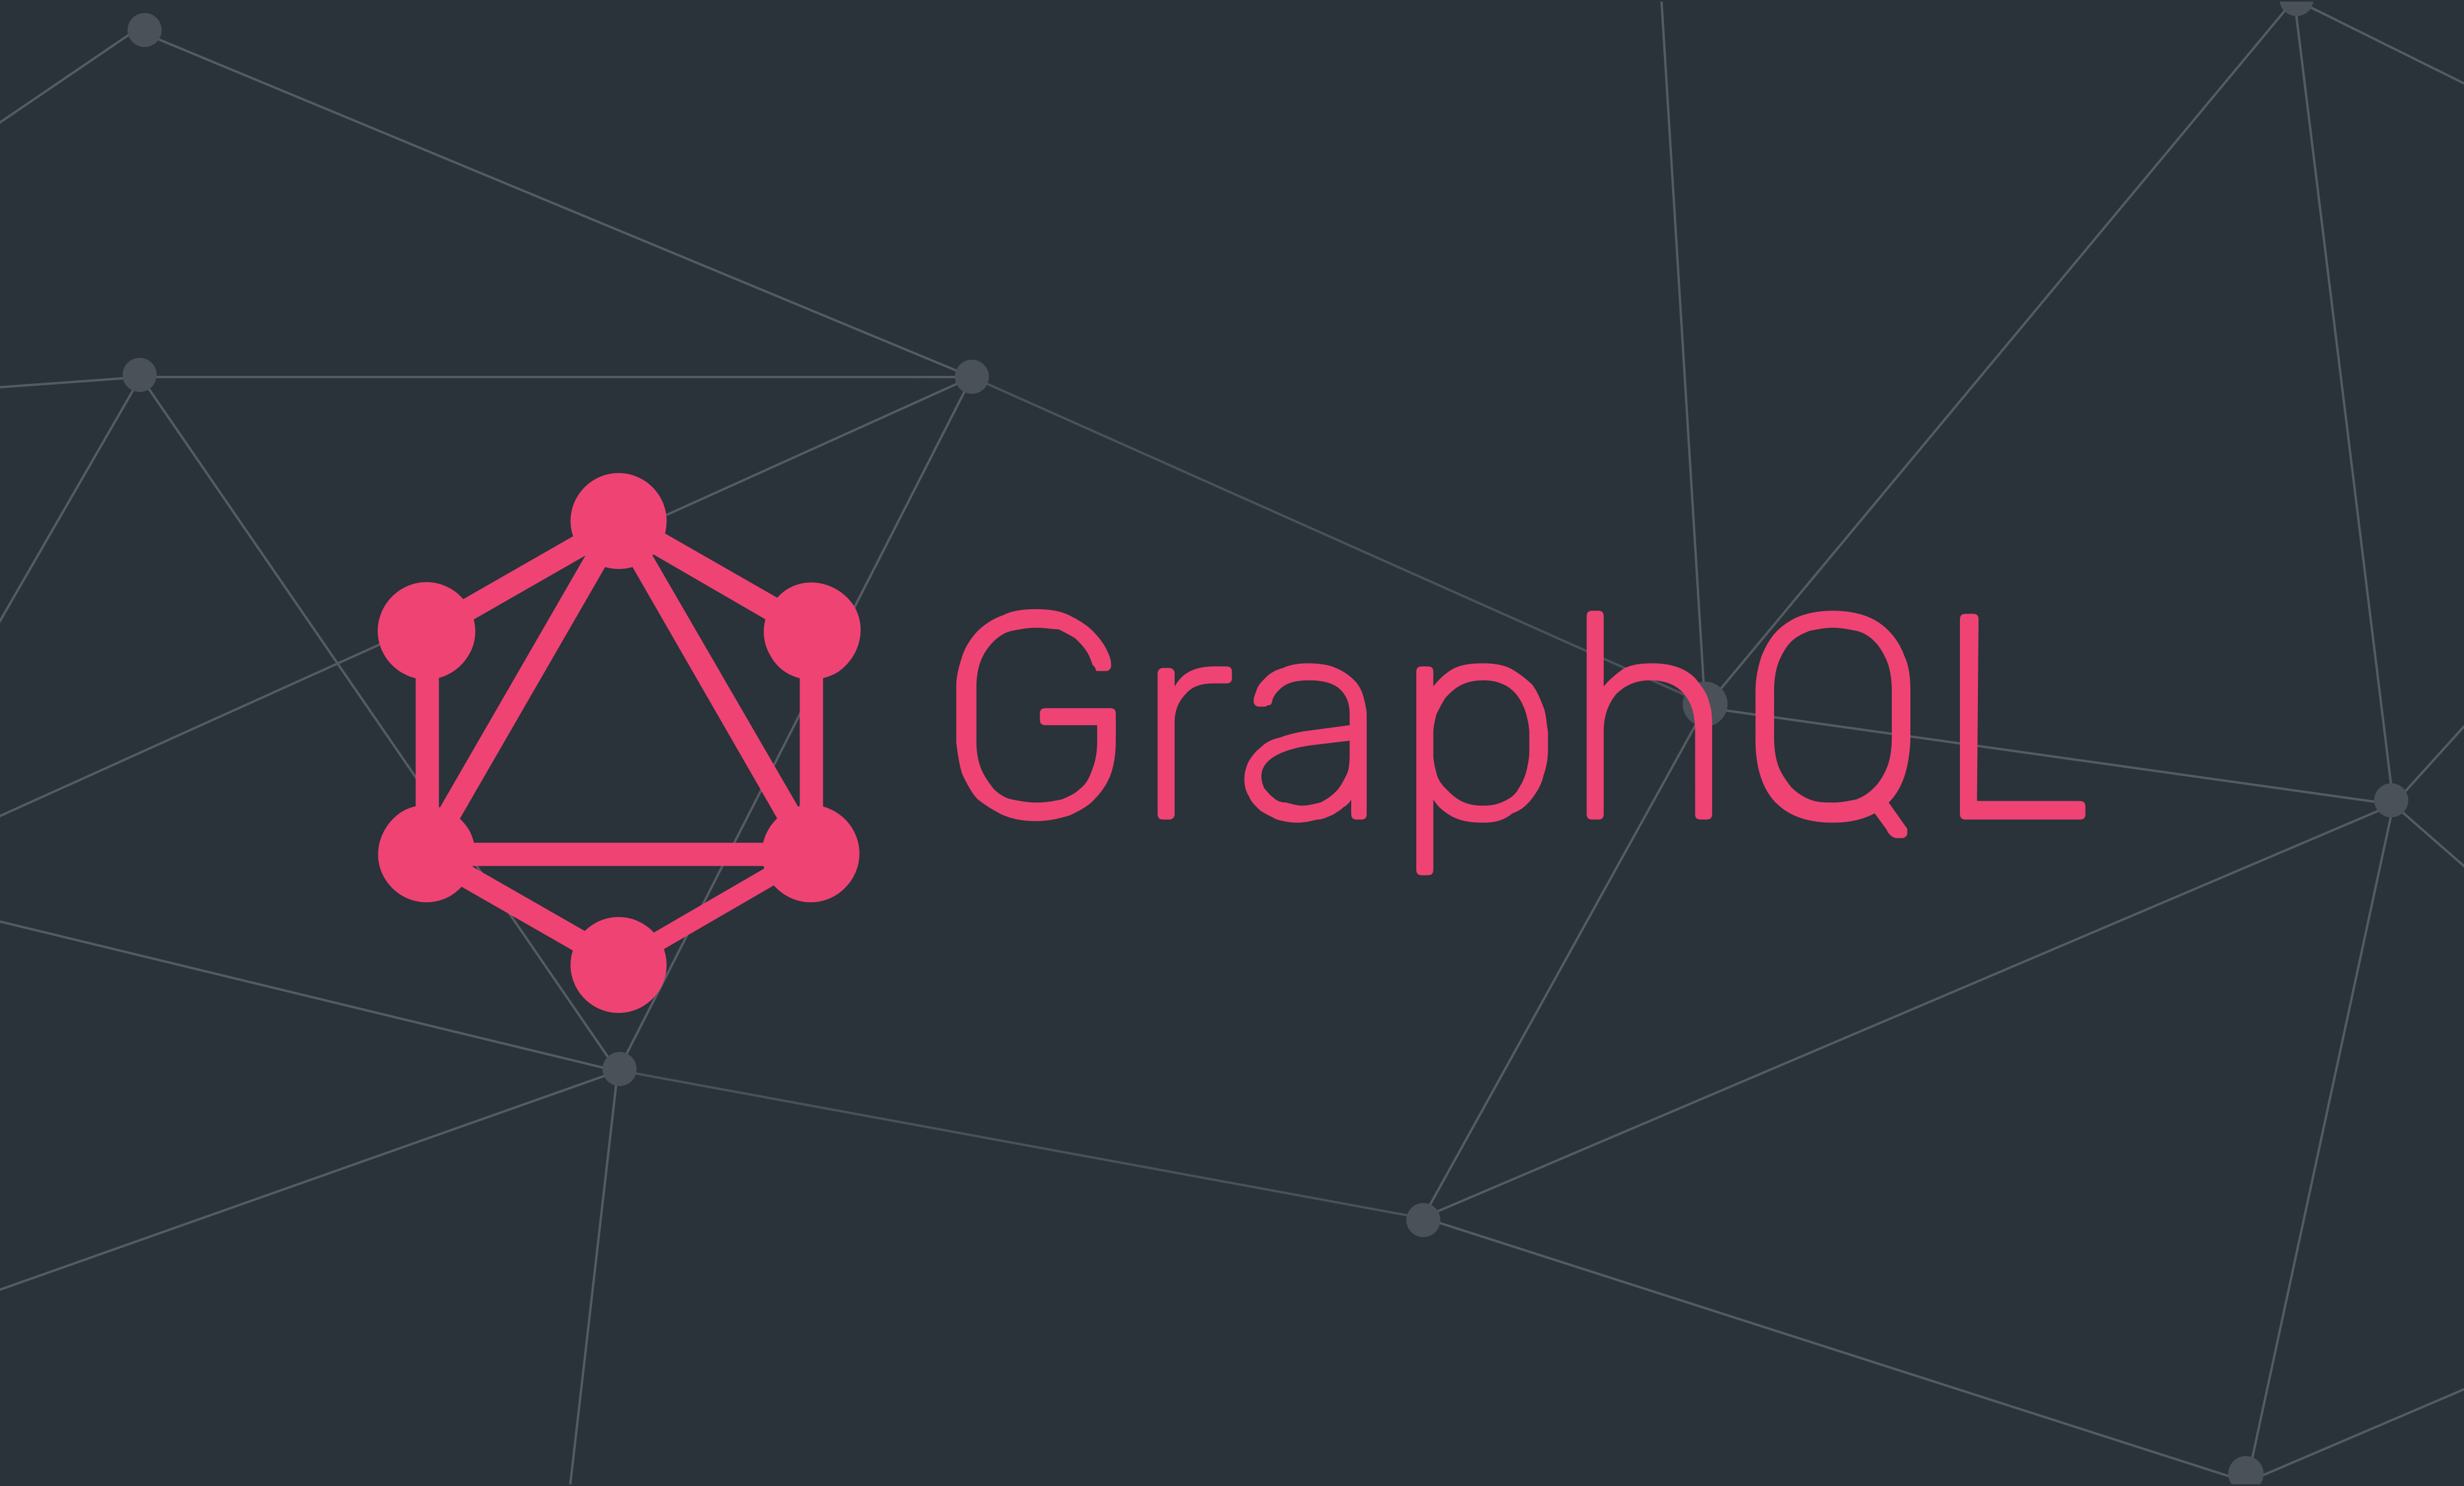 How to Setup a GraphQL, Express and postgreSQL Server